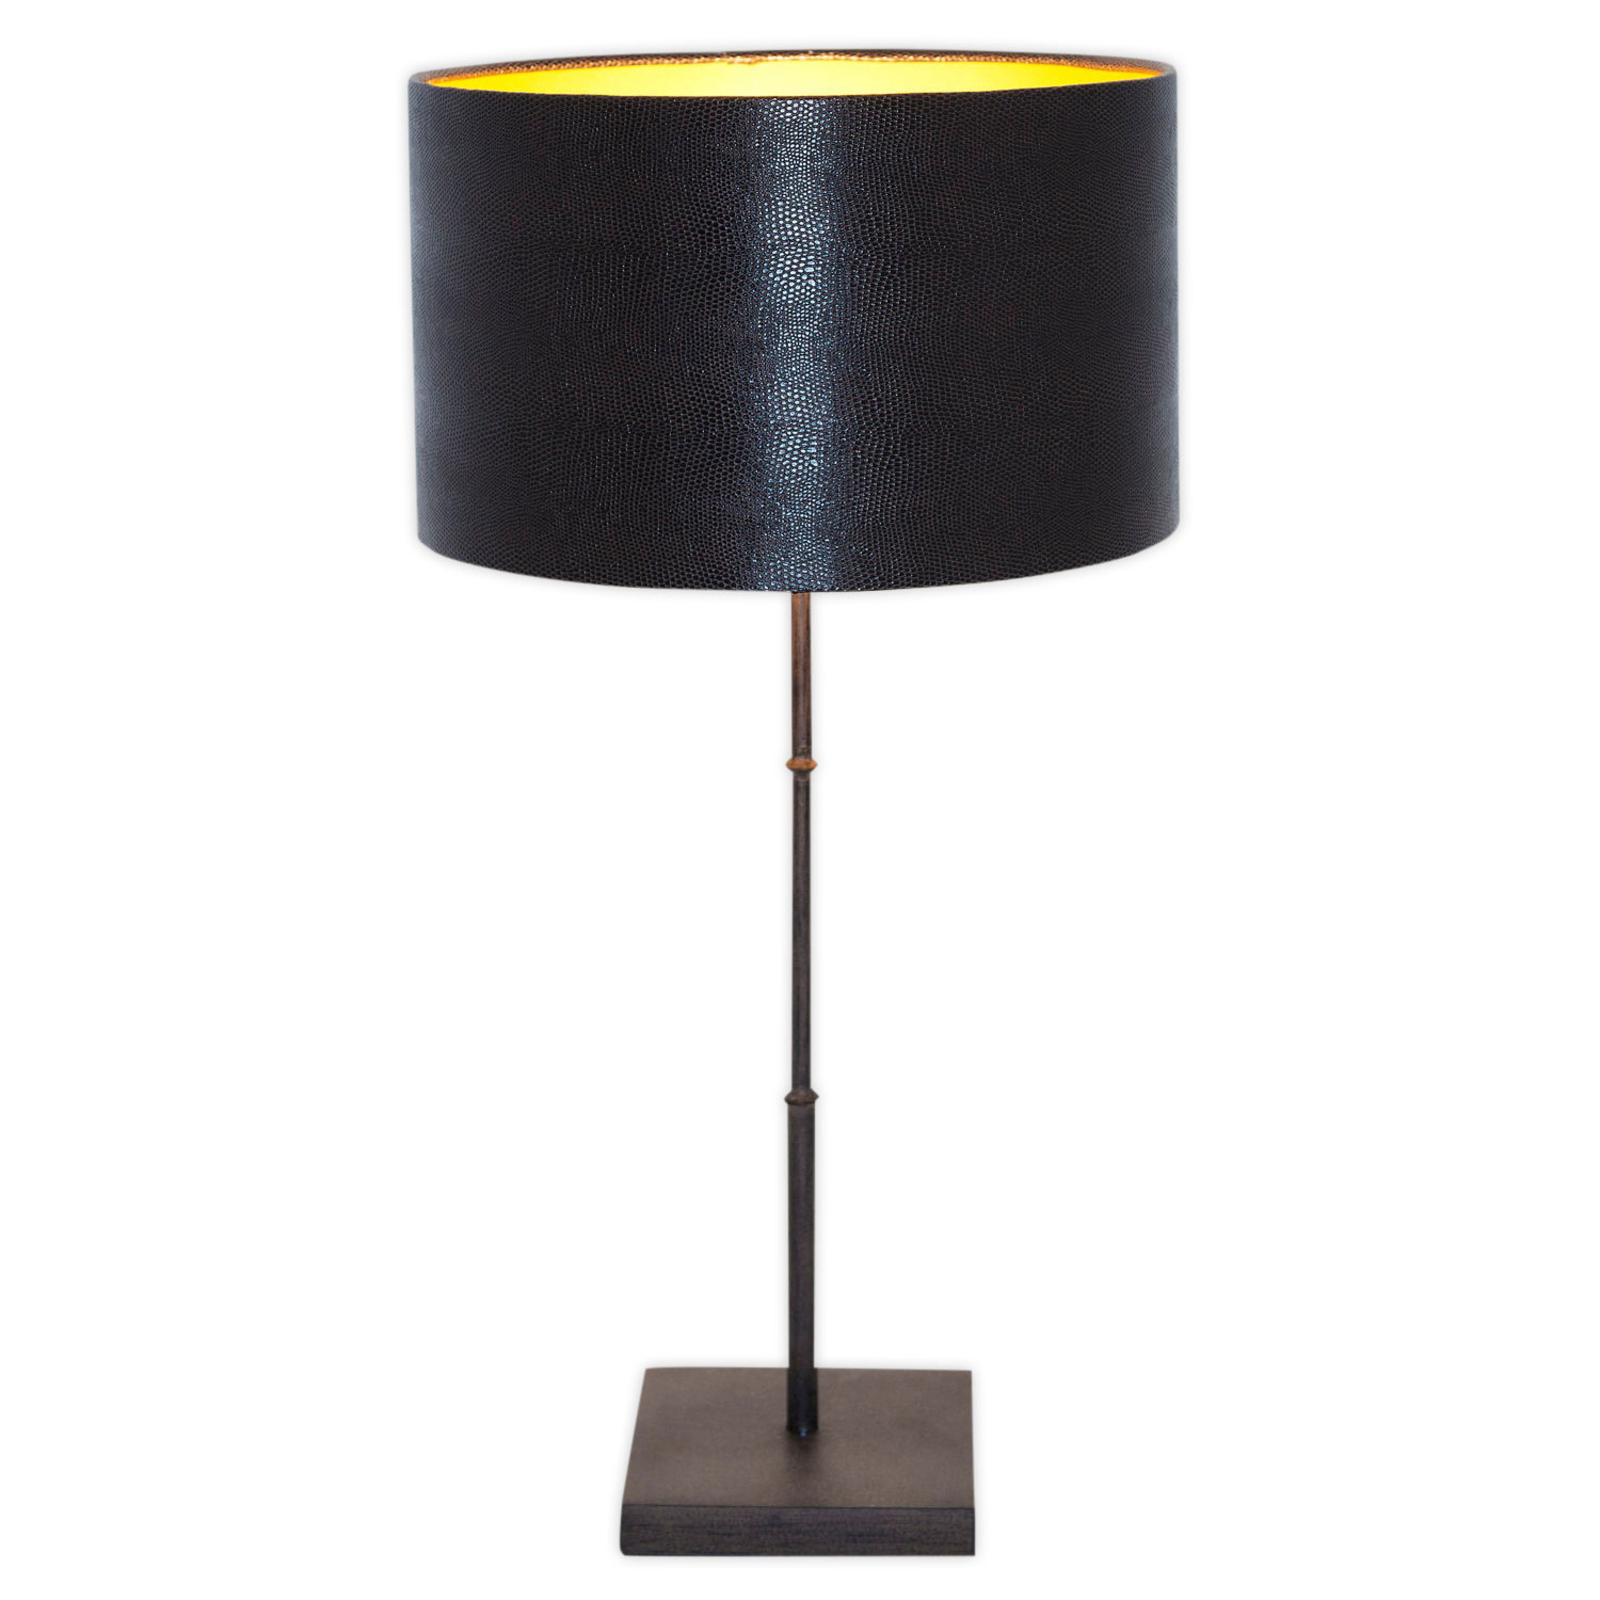 Bordslampa Bambus, brun-svart guld